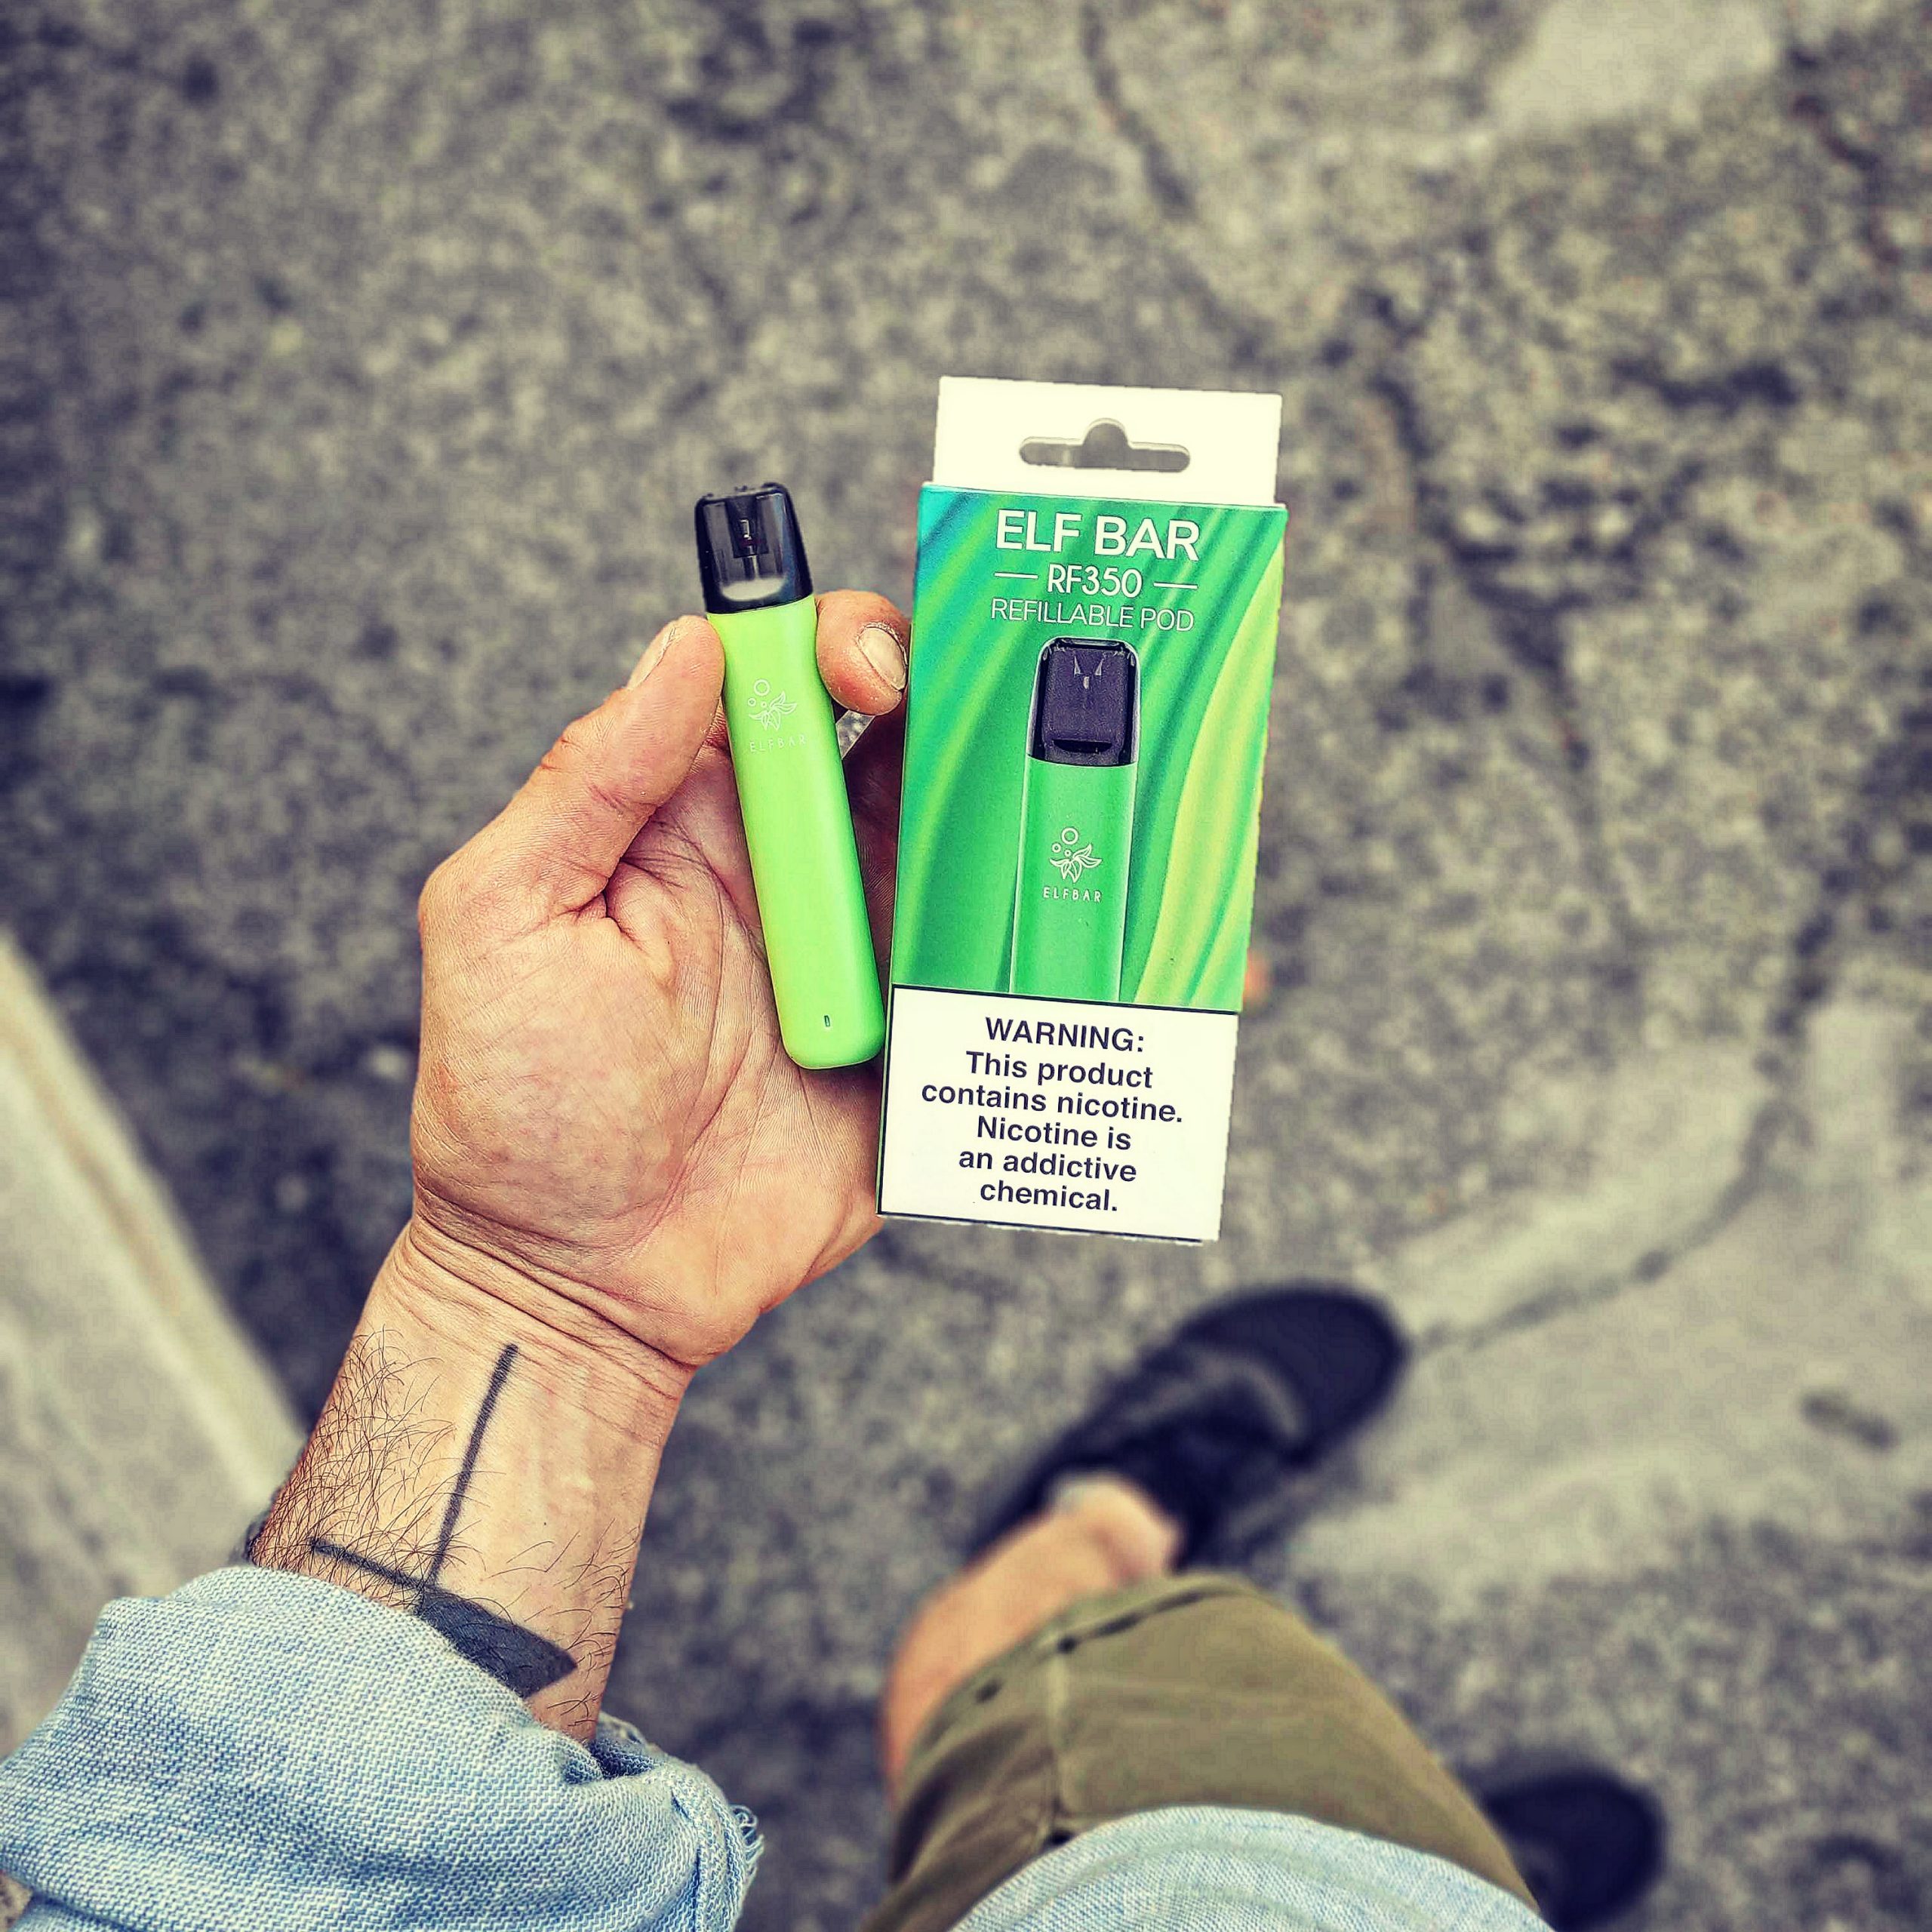 ELF BAR Sigaretta elettronica con tiro automatico e sensore di aspirazione, kit ecig per smettere di fumare EcoLogicaMente sigarette elettronica NO USA E GETTA